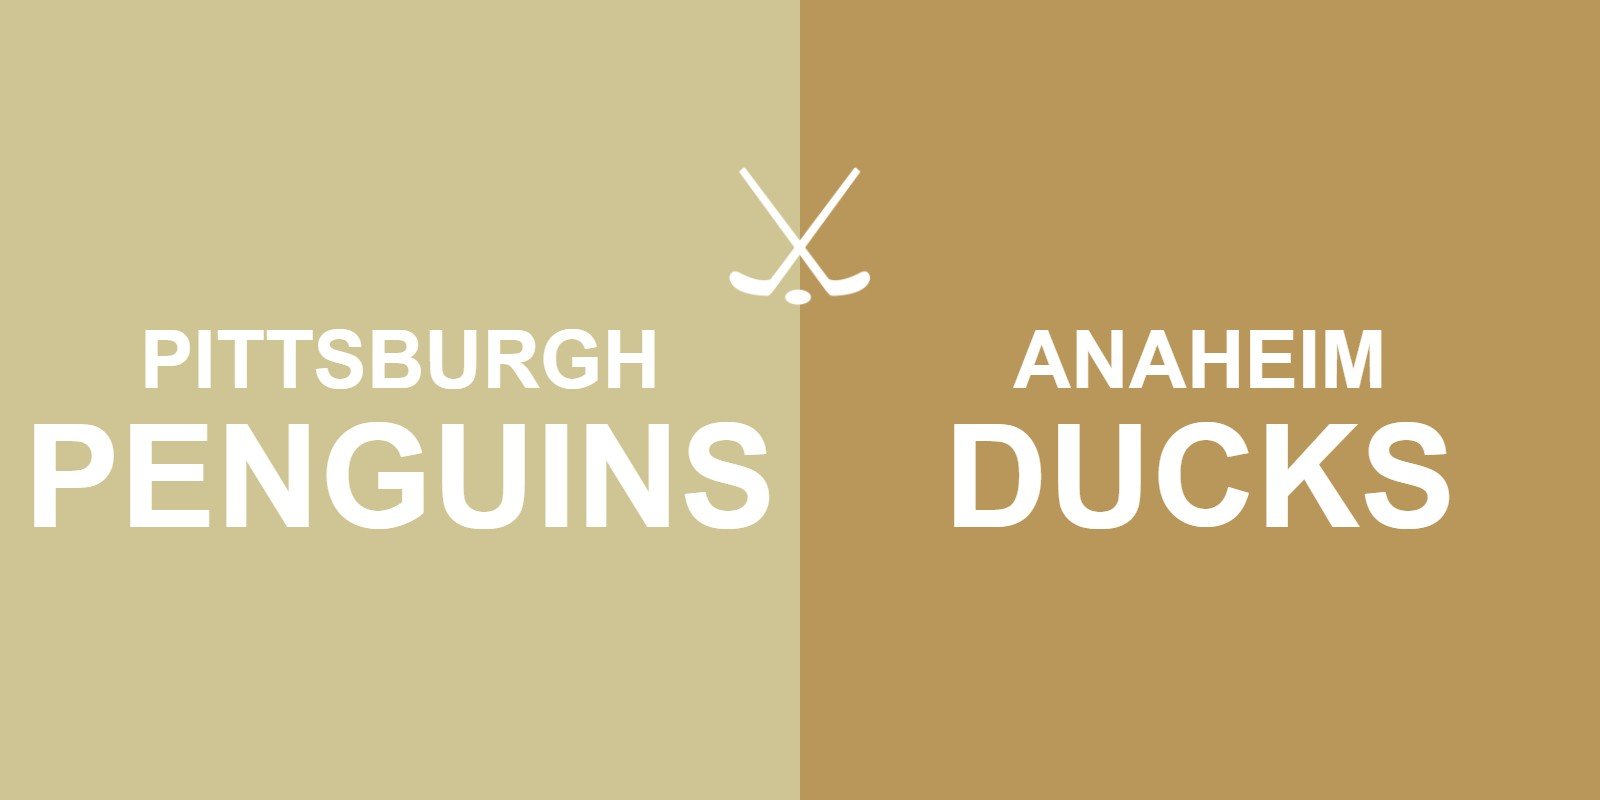 Penguins vs Ducks